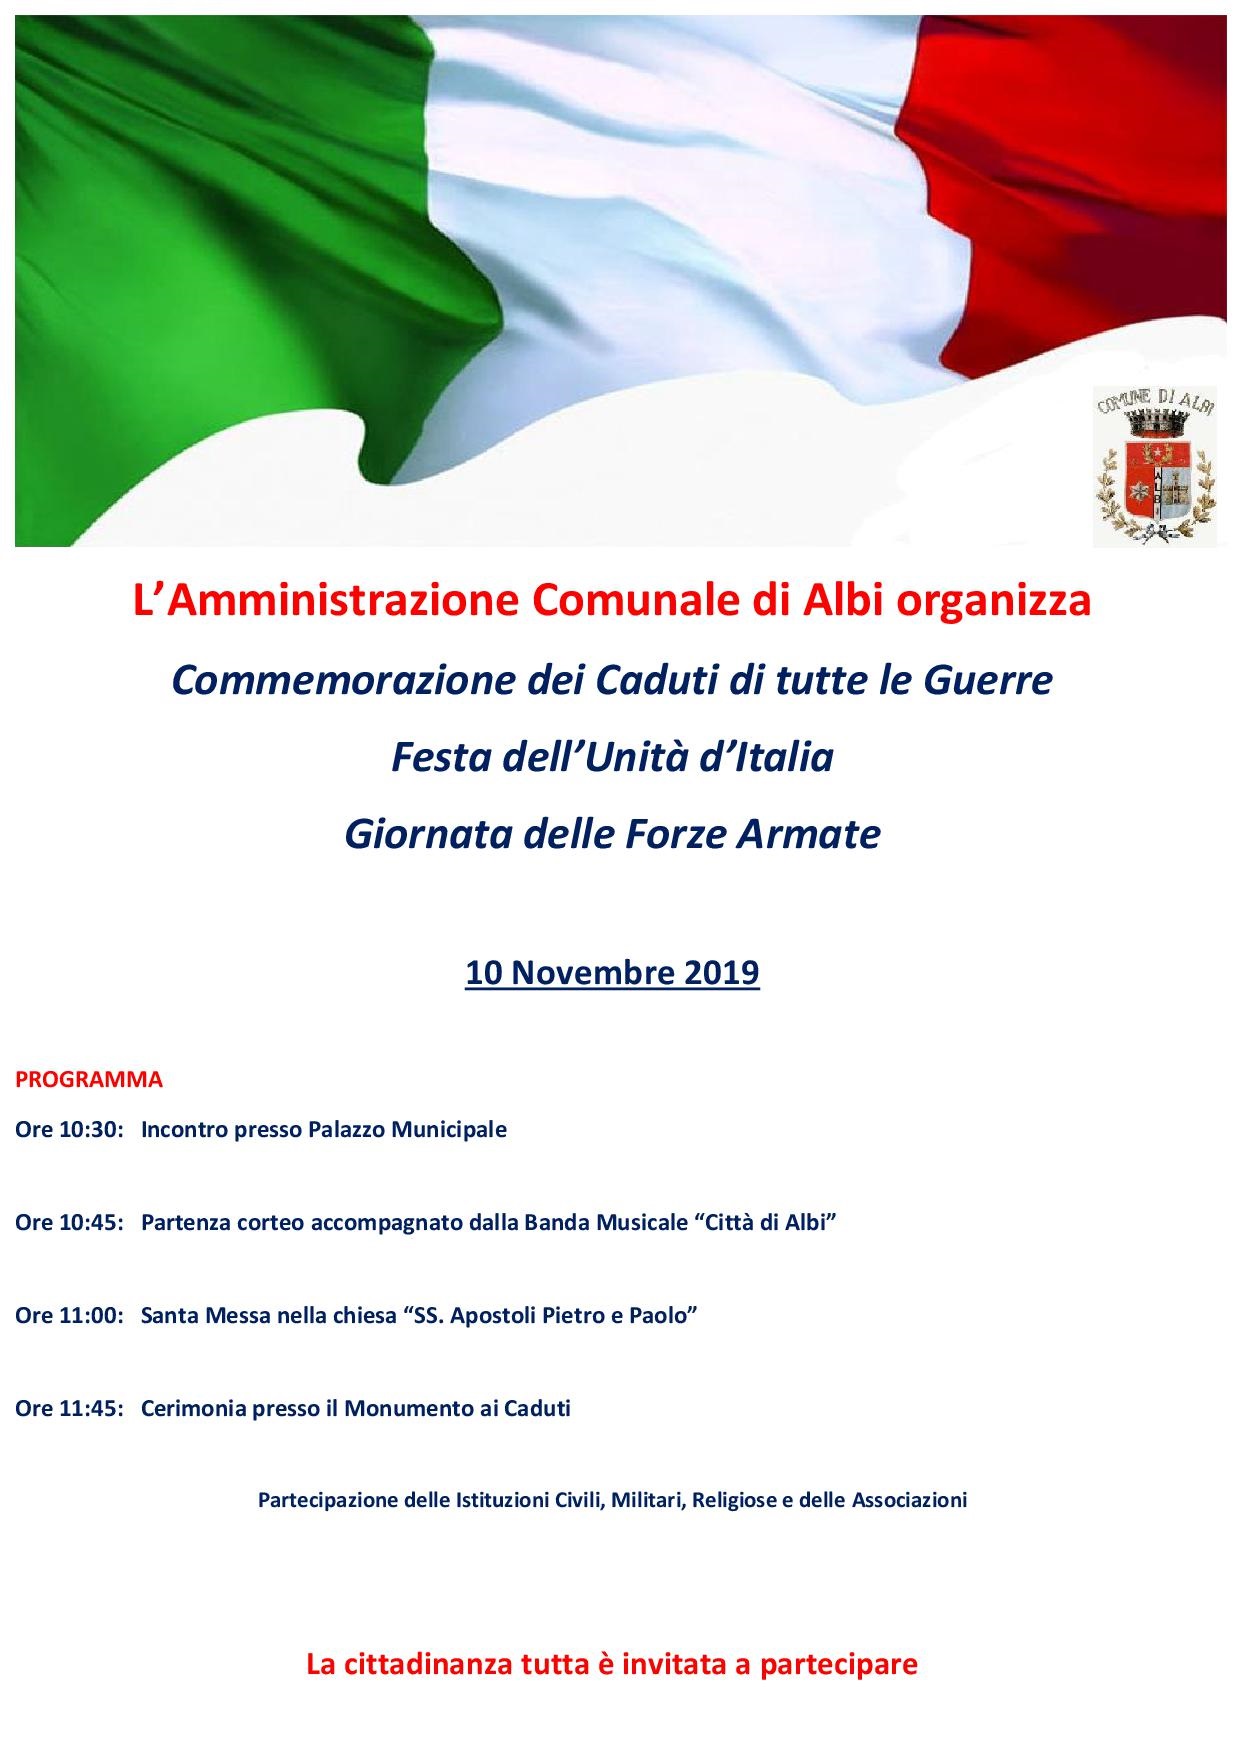 Commemorazione dei Caduti di tutte le Guerre  Festa dell’Unità d’Italia Giornata delle Forze Armate